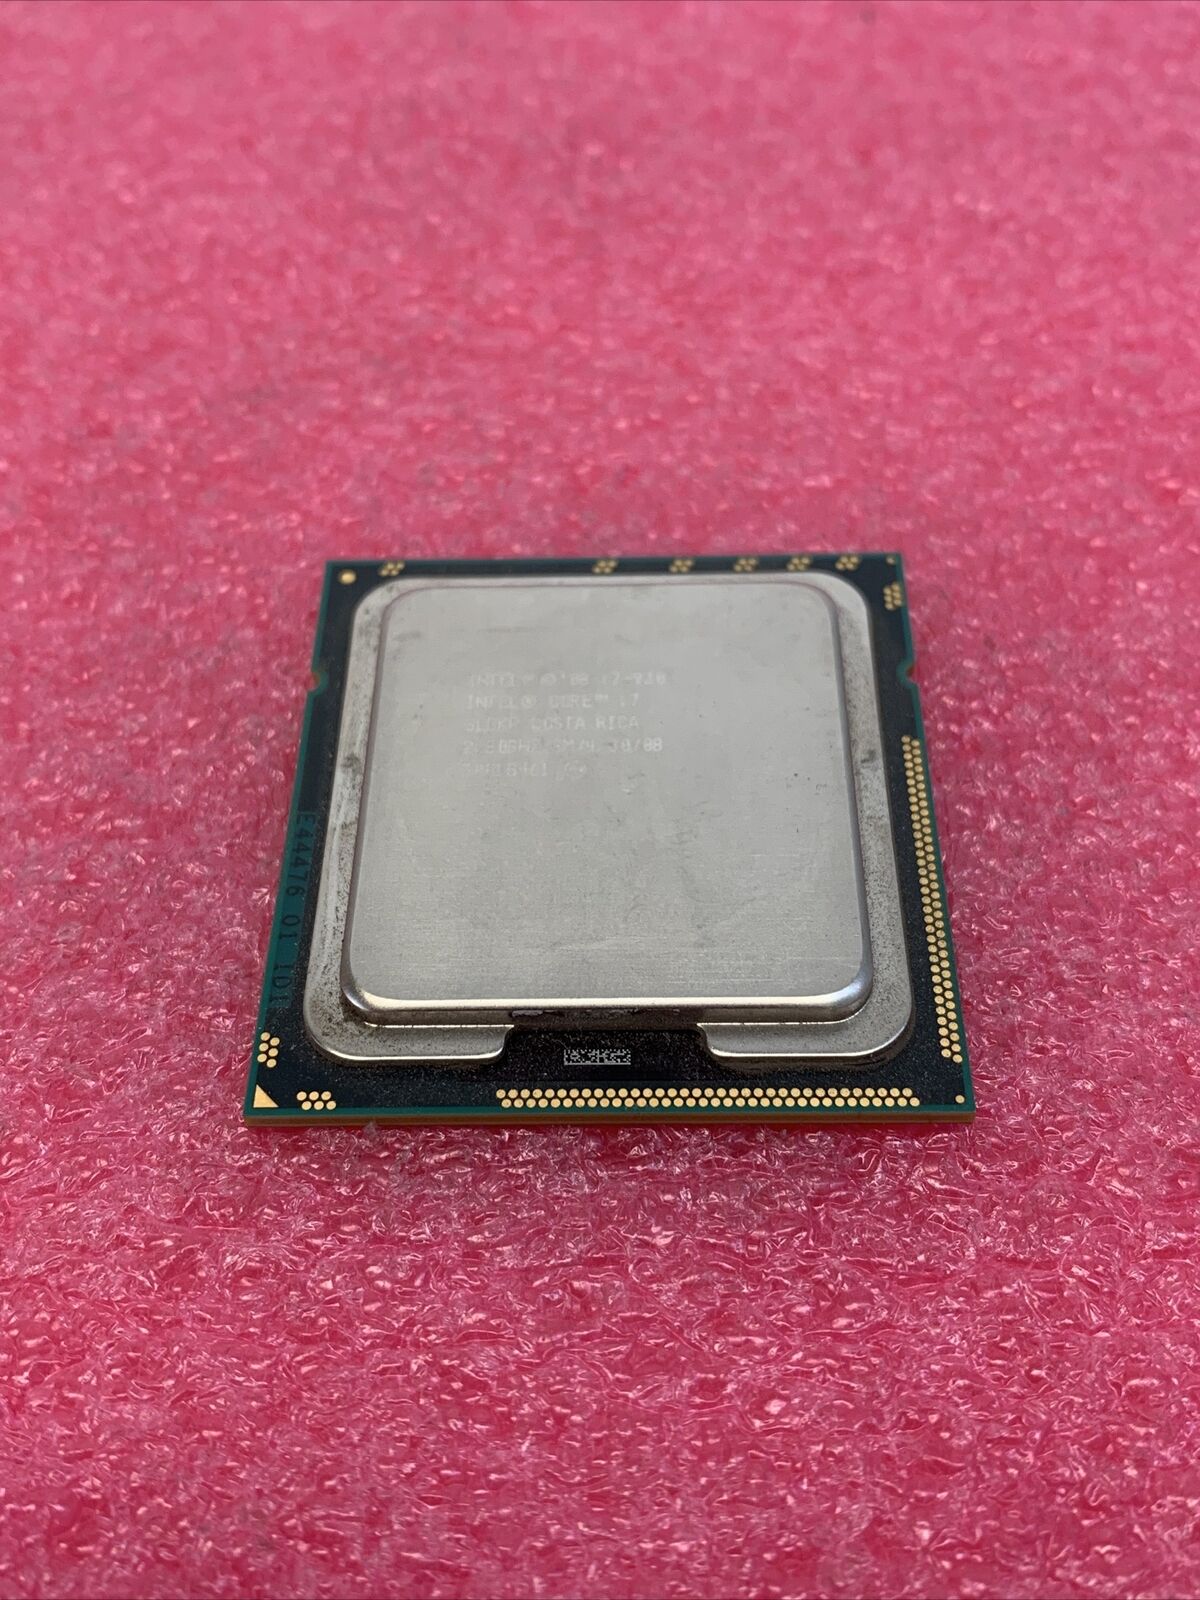 Intel Core i7-930 2.8GHz SLBKP Processor